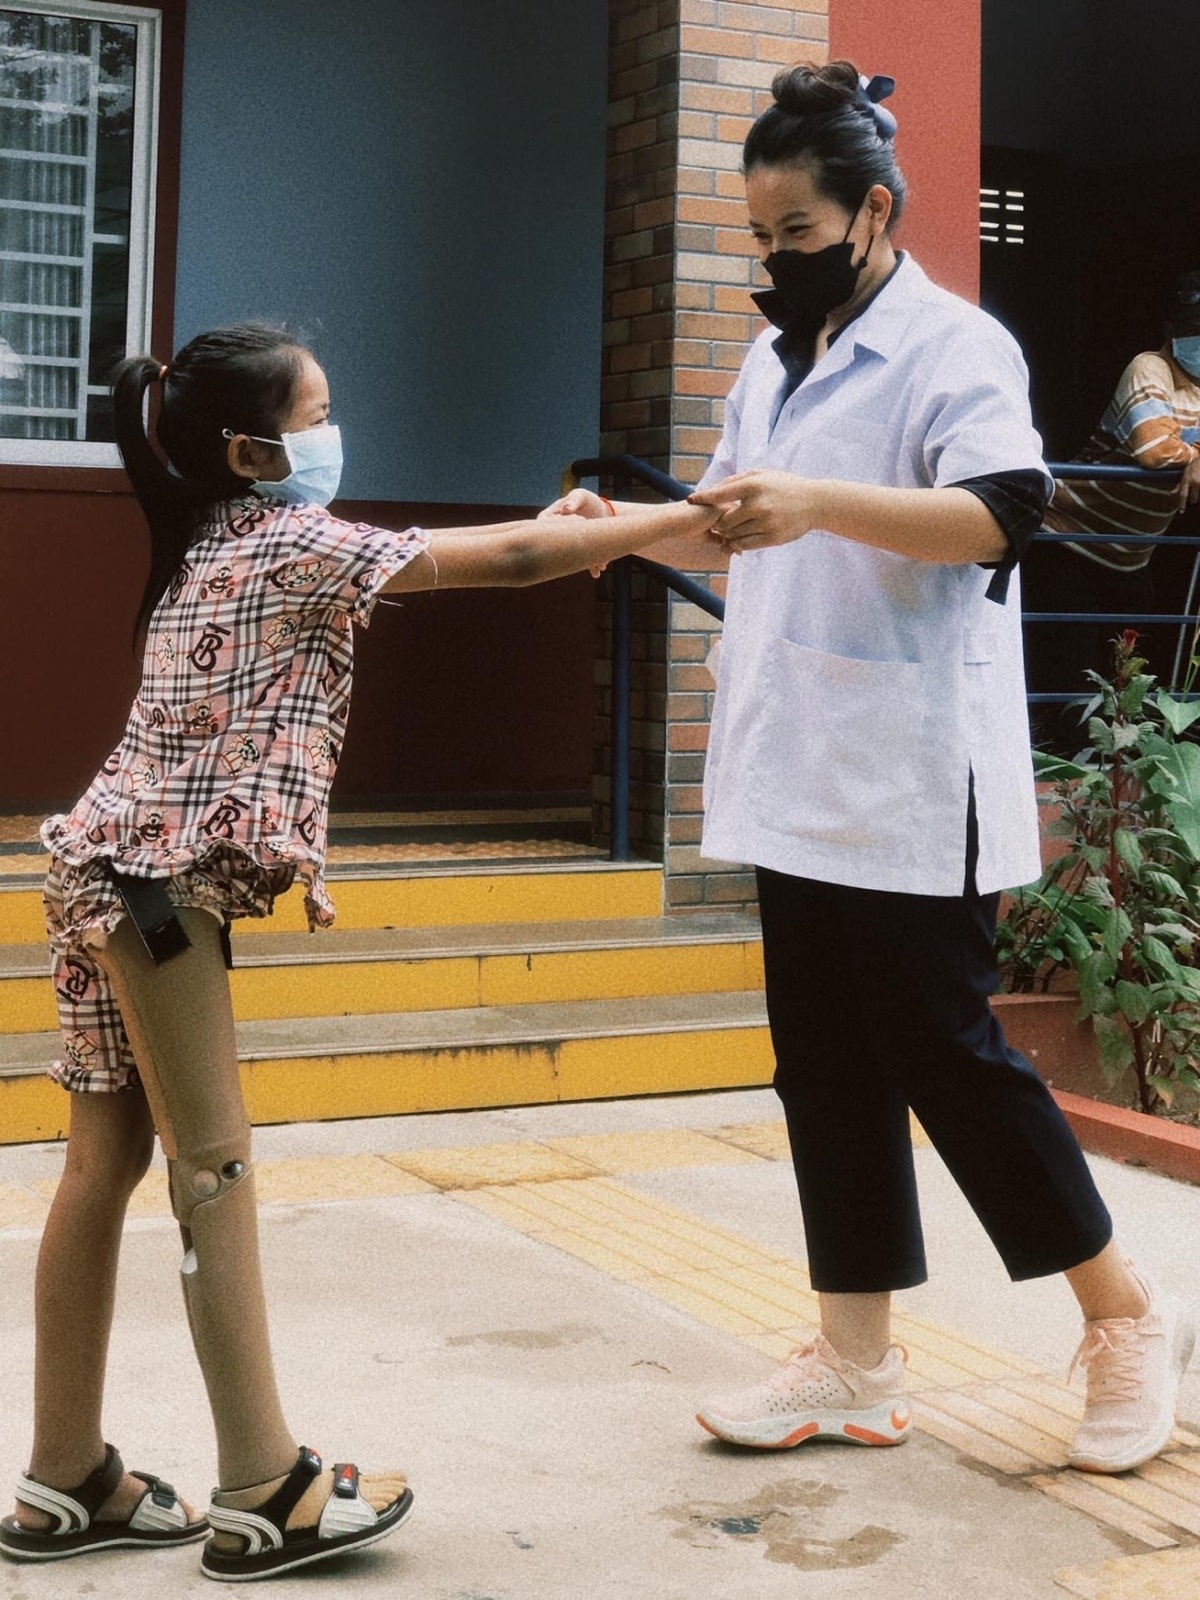 Rakseymutta tient les deux mains d'une petite fille avec une prothèse pour 'laider à marcher